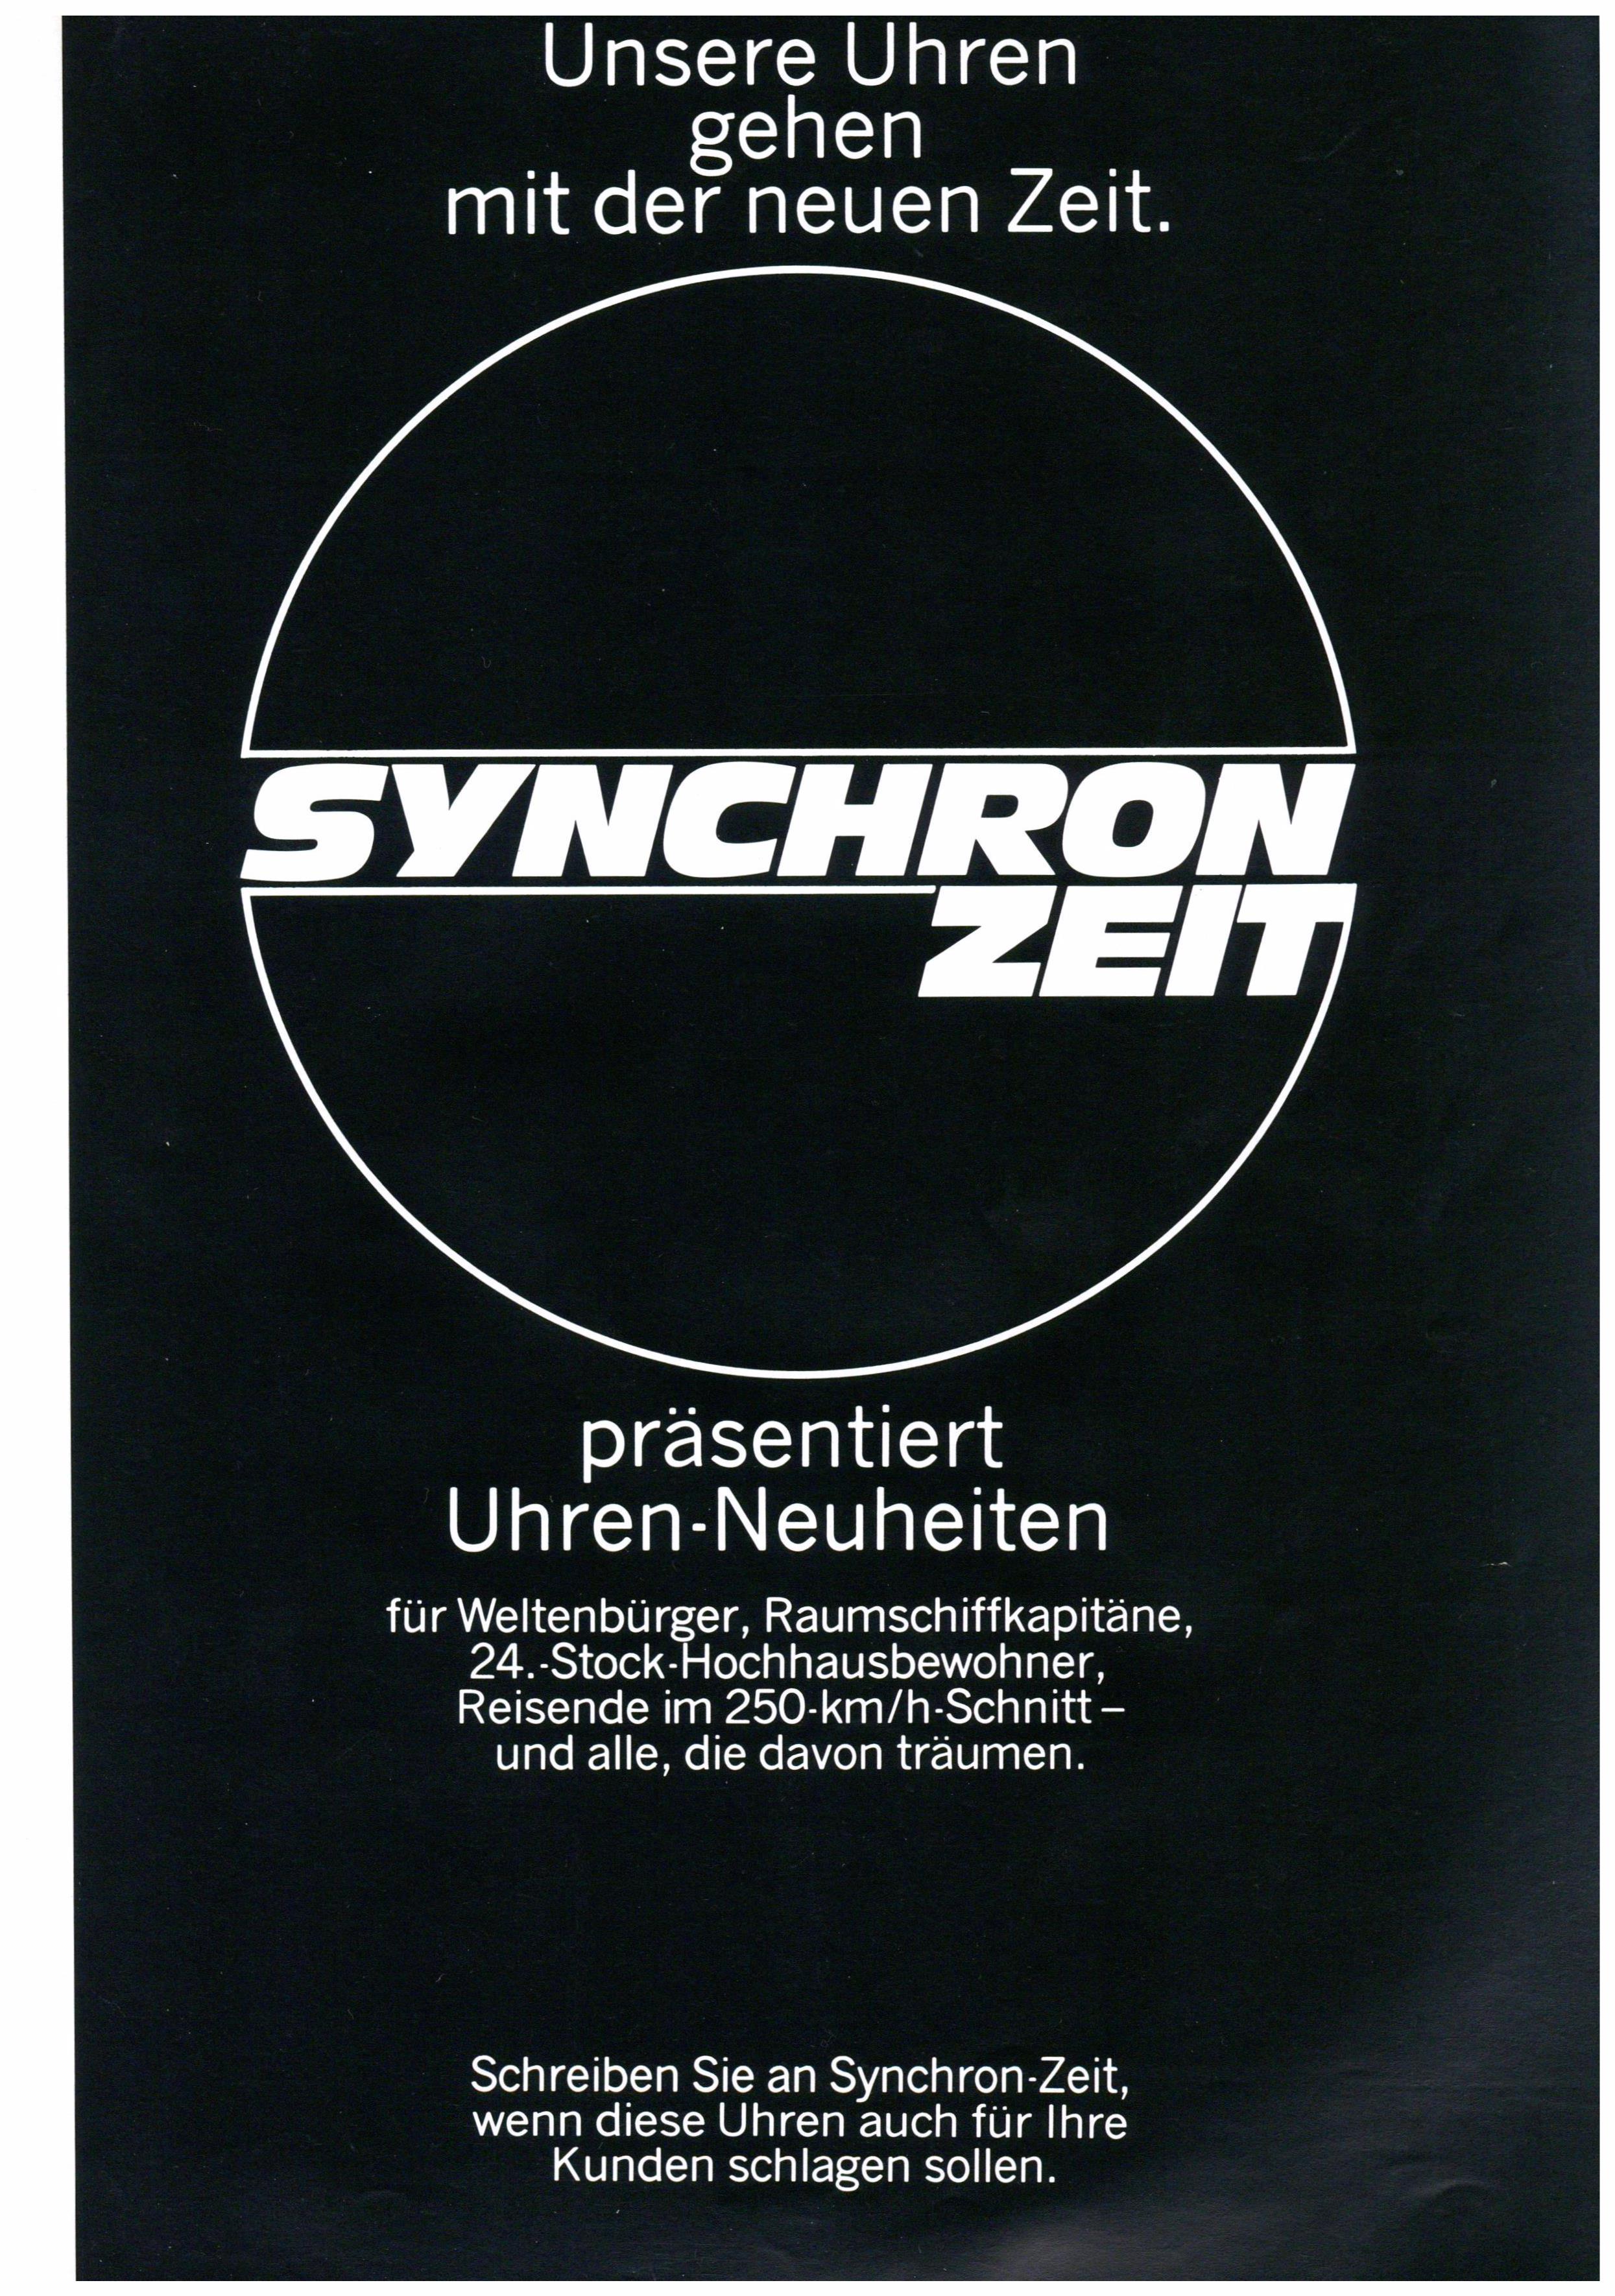 Synchron Zeit 1969 0-3.jpg